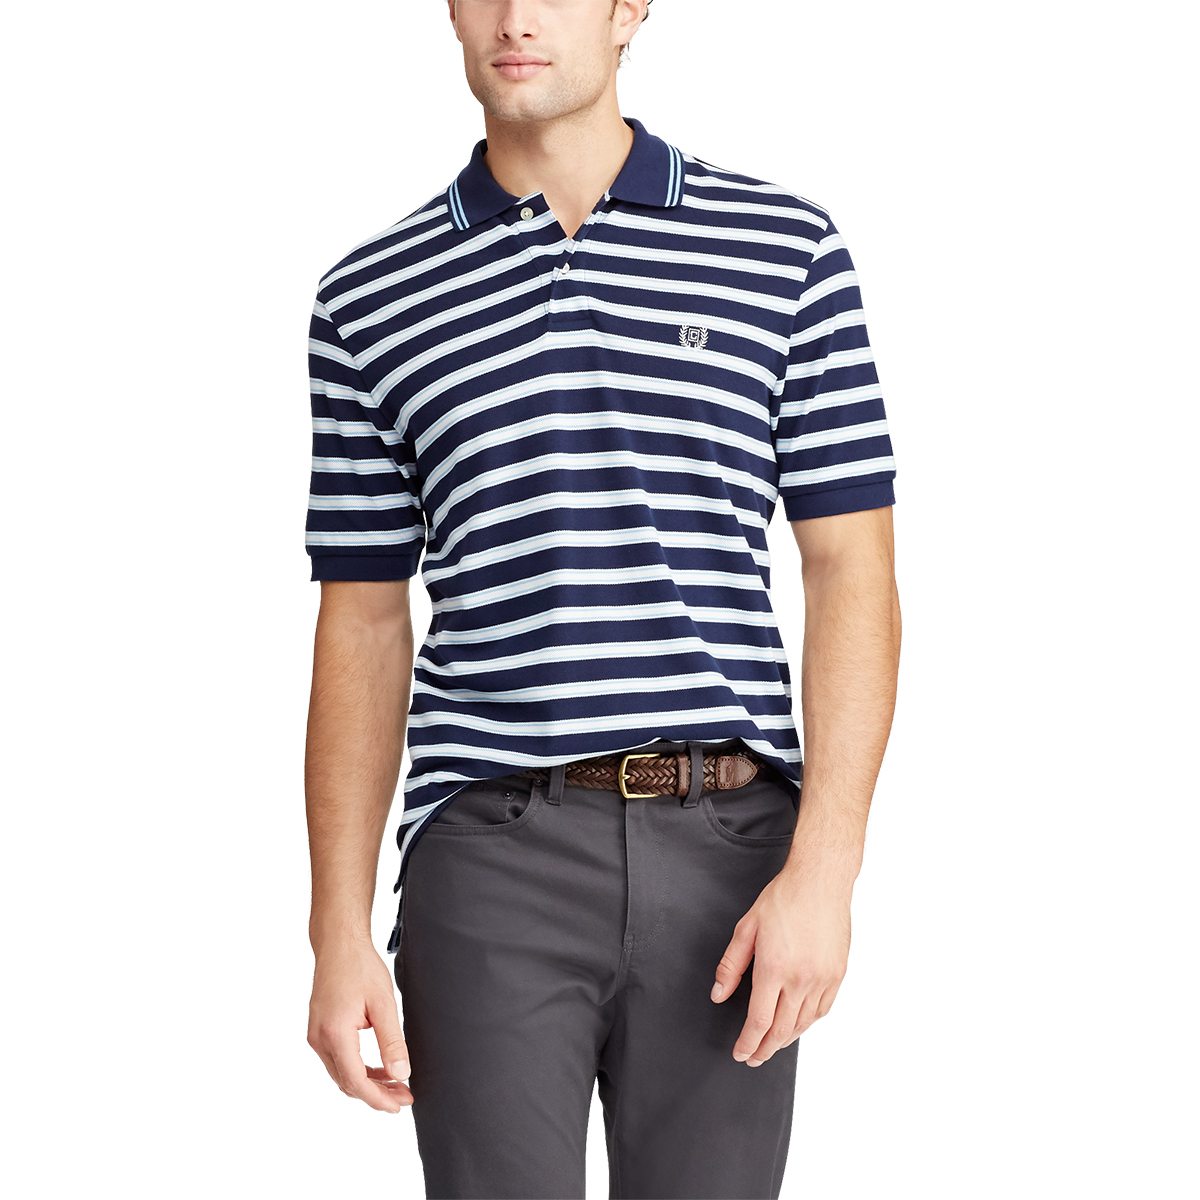 Chaps Men's Classic Fit Striped Cotton Polo - Blue, M